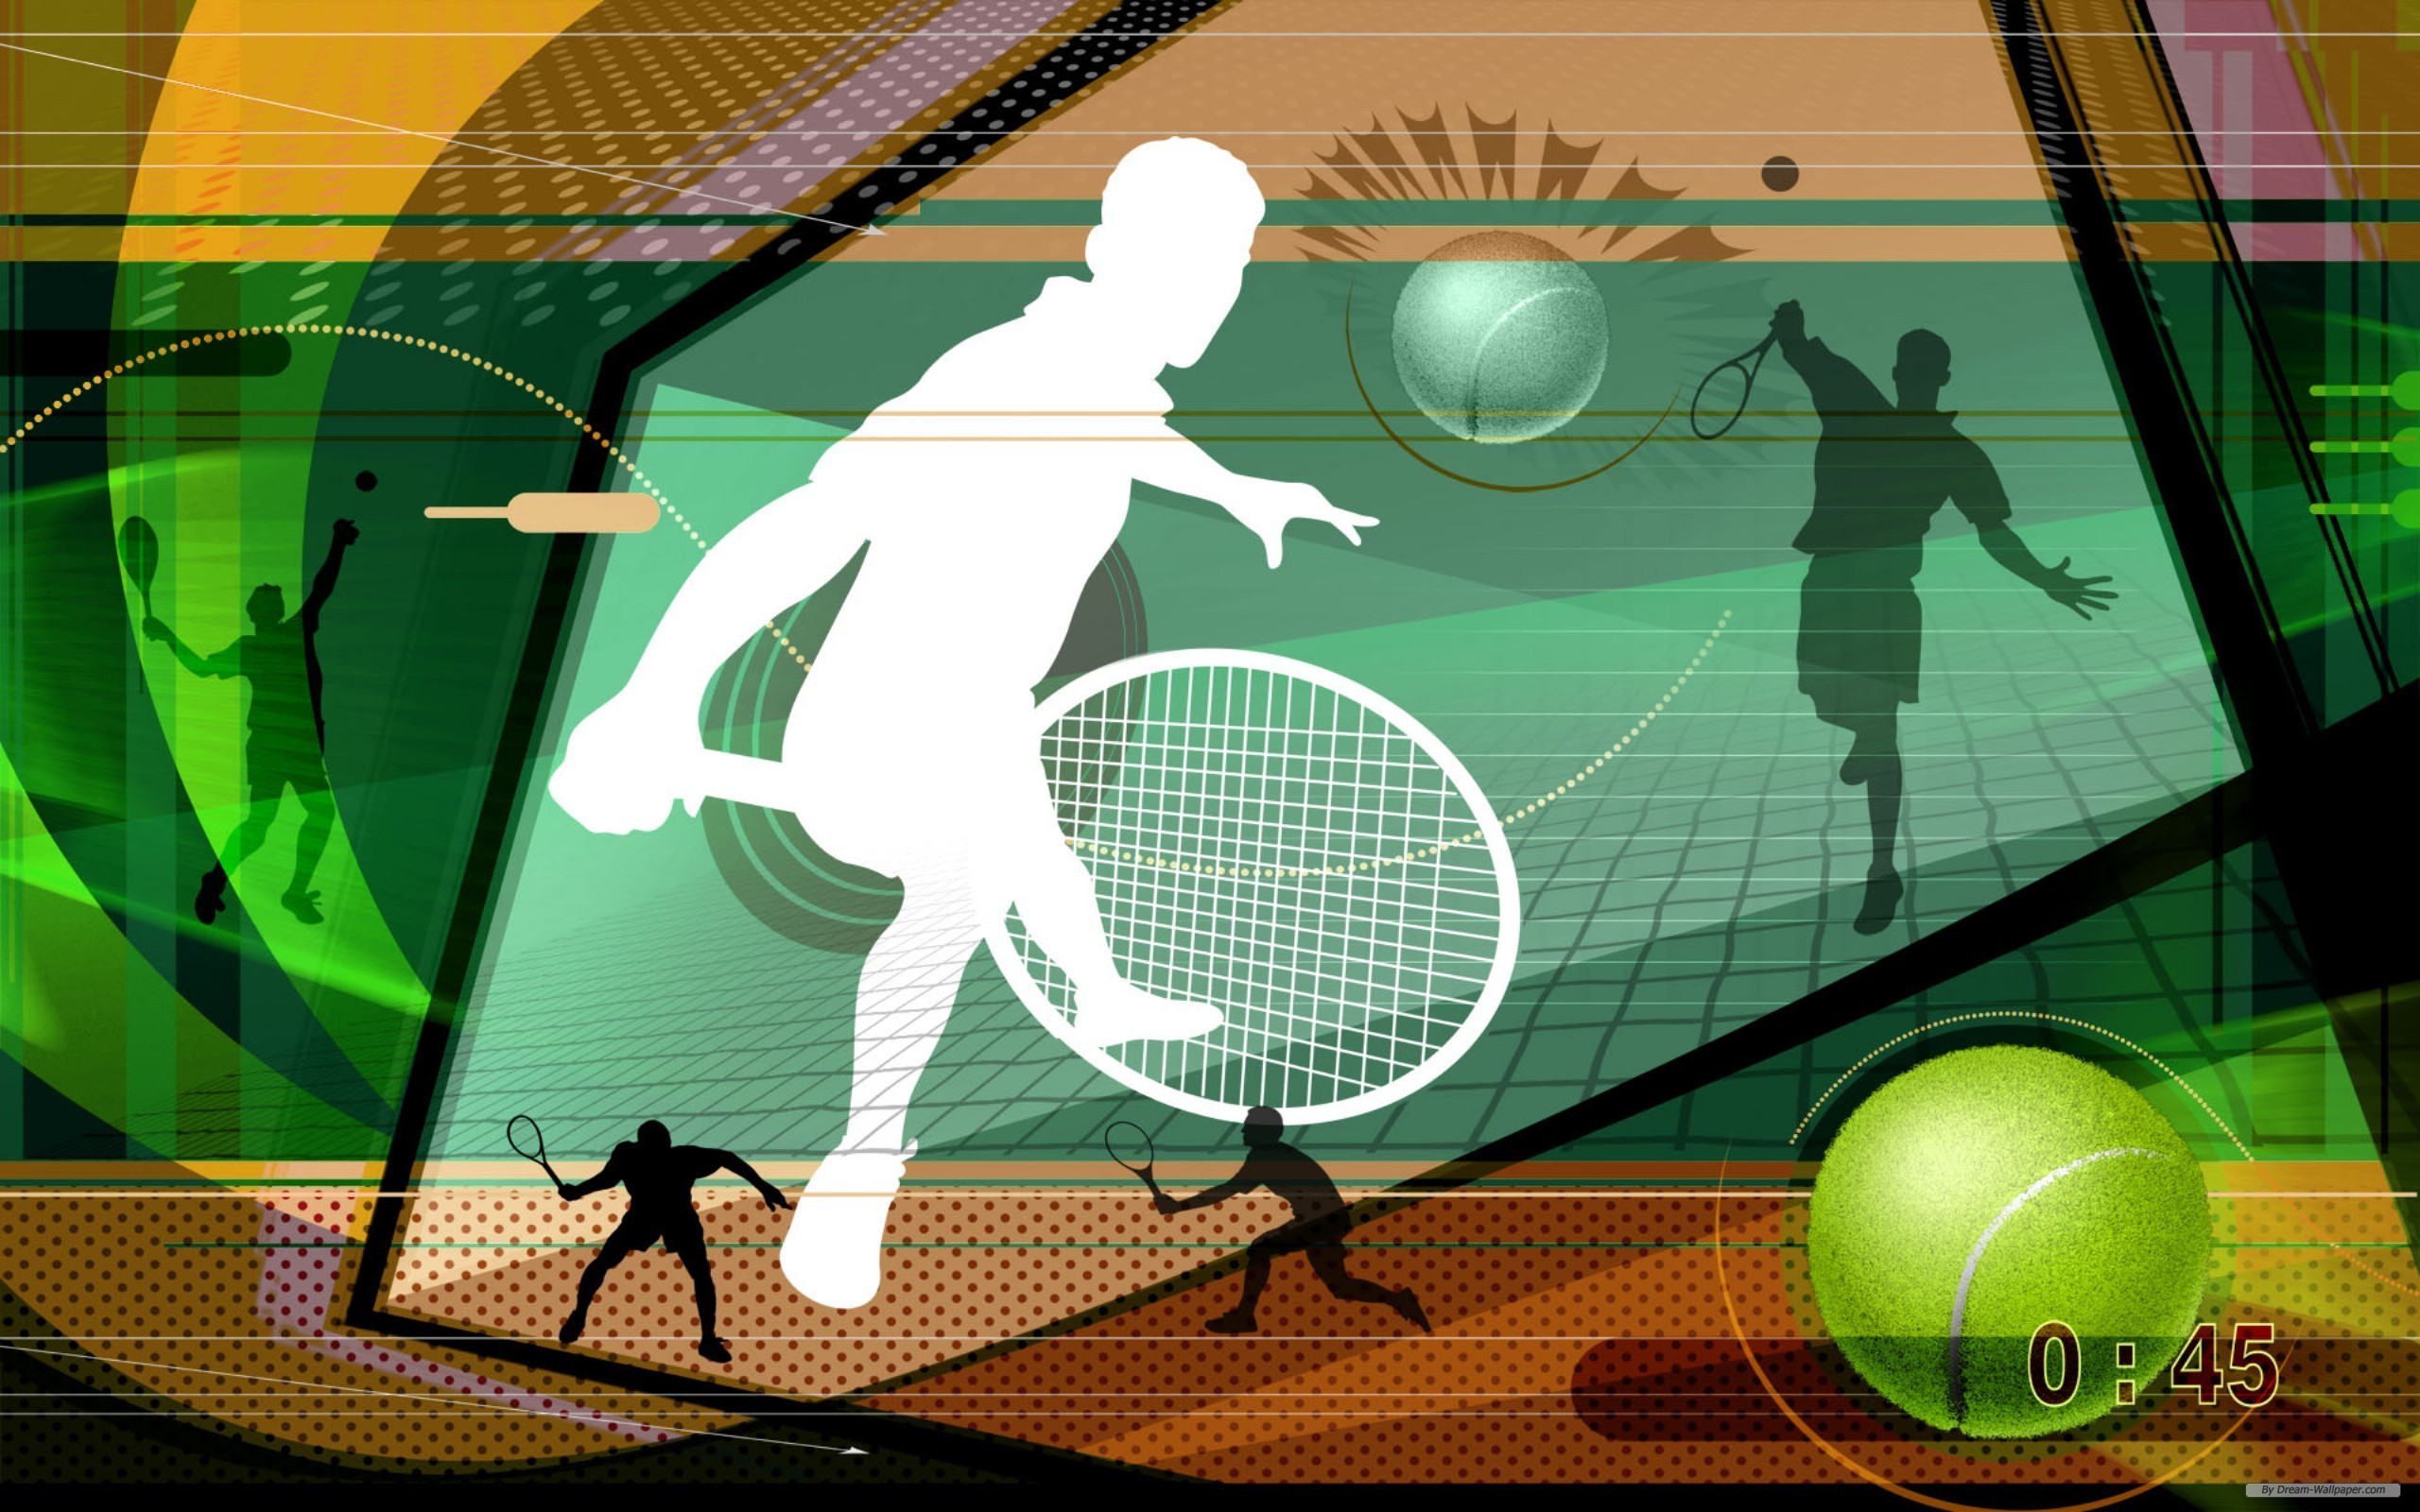 アンドロイドのためのスポーツの壁紙,テニス,ラケットスポーツ,ラケット,ラケットロン,パドルテニス